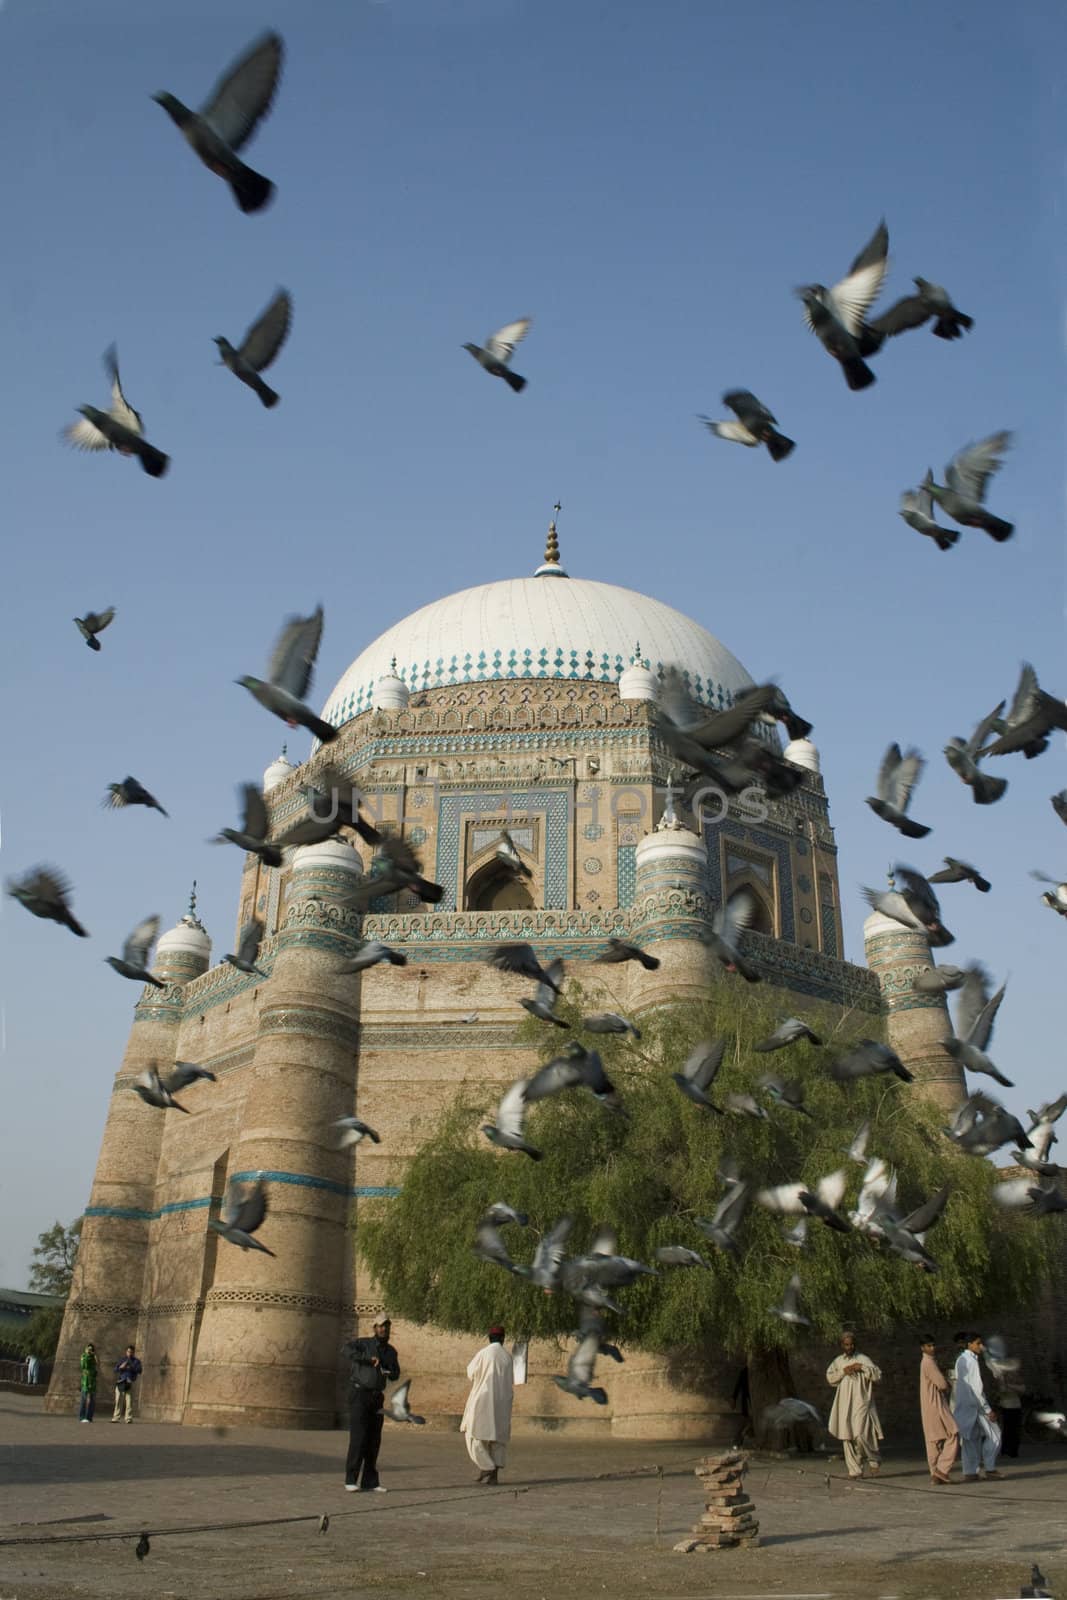 Mausoleum of Shah Rukn-e-Alam